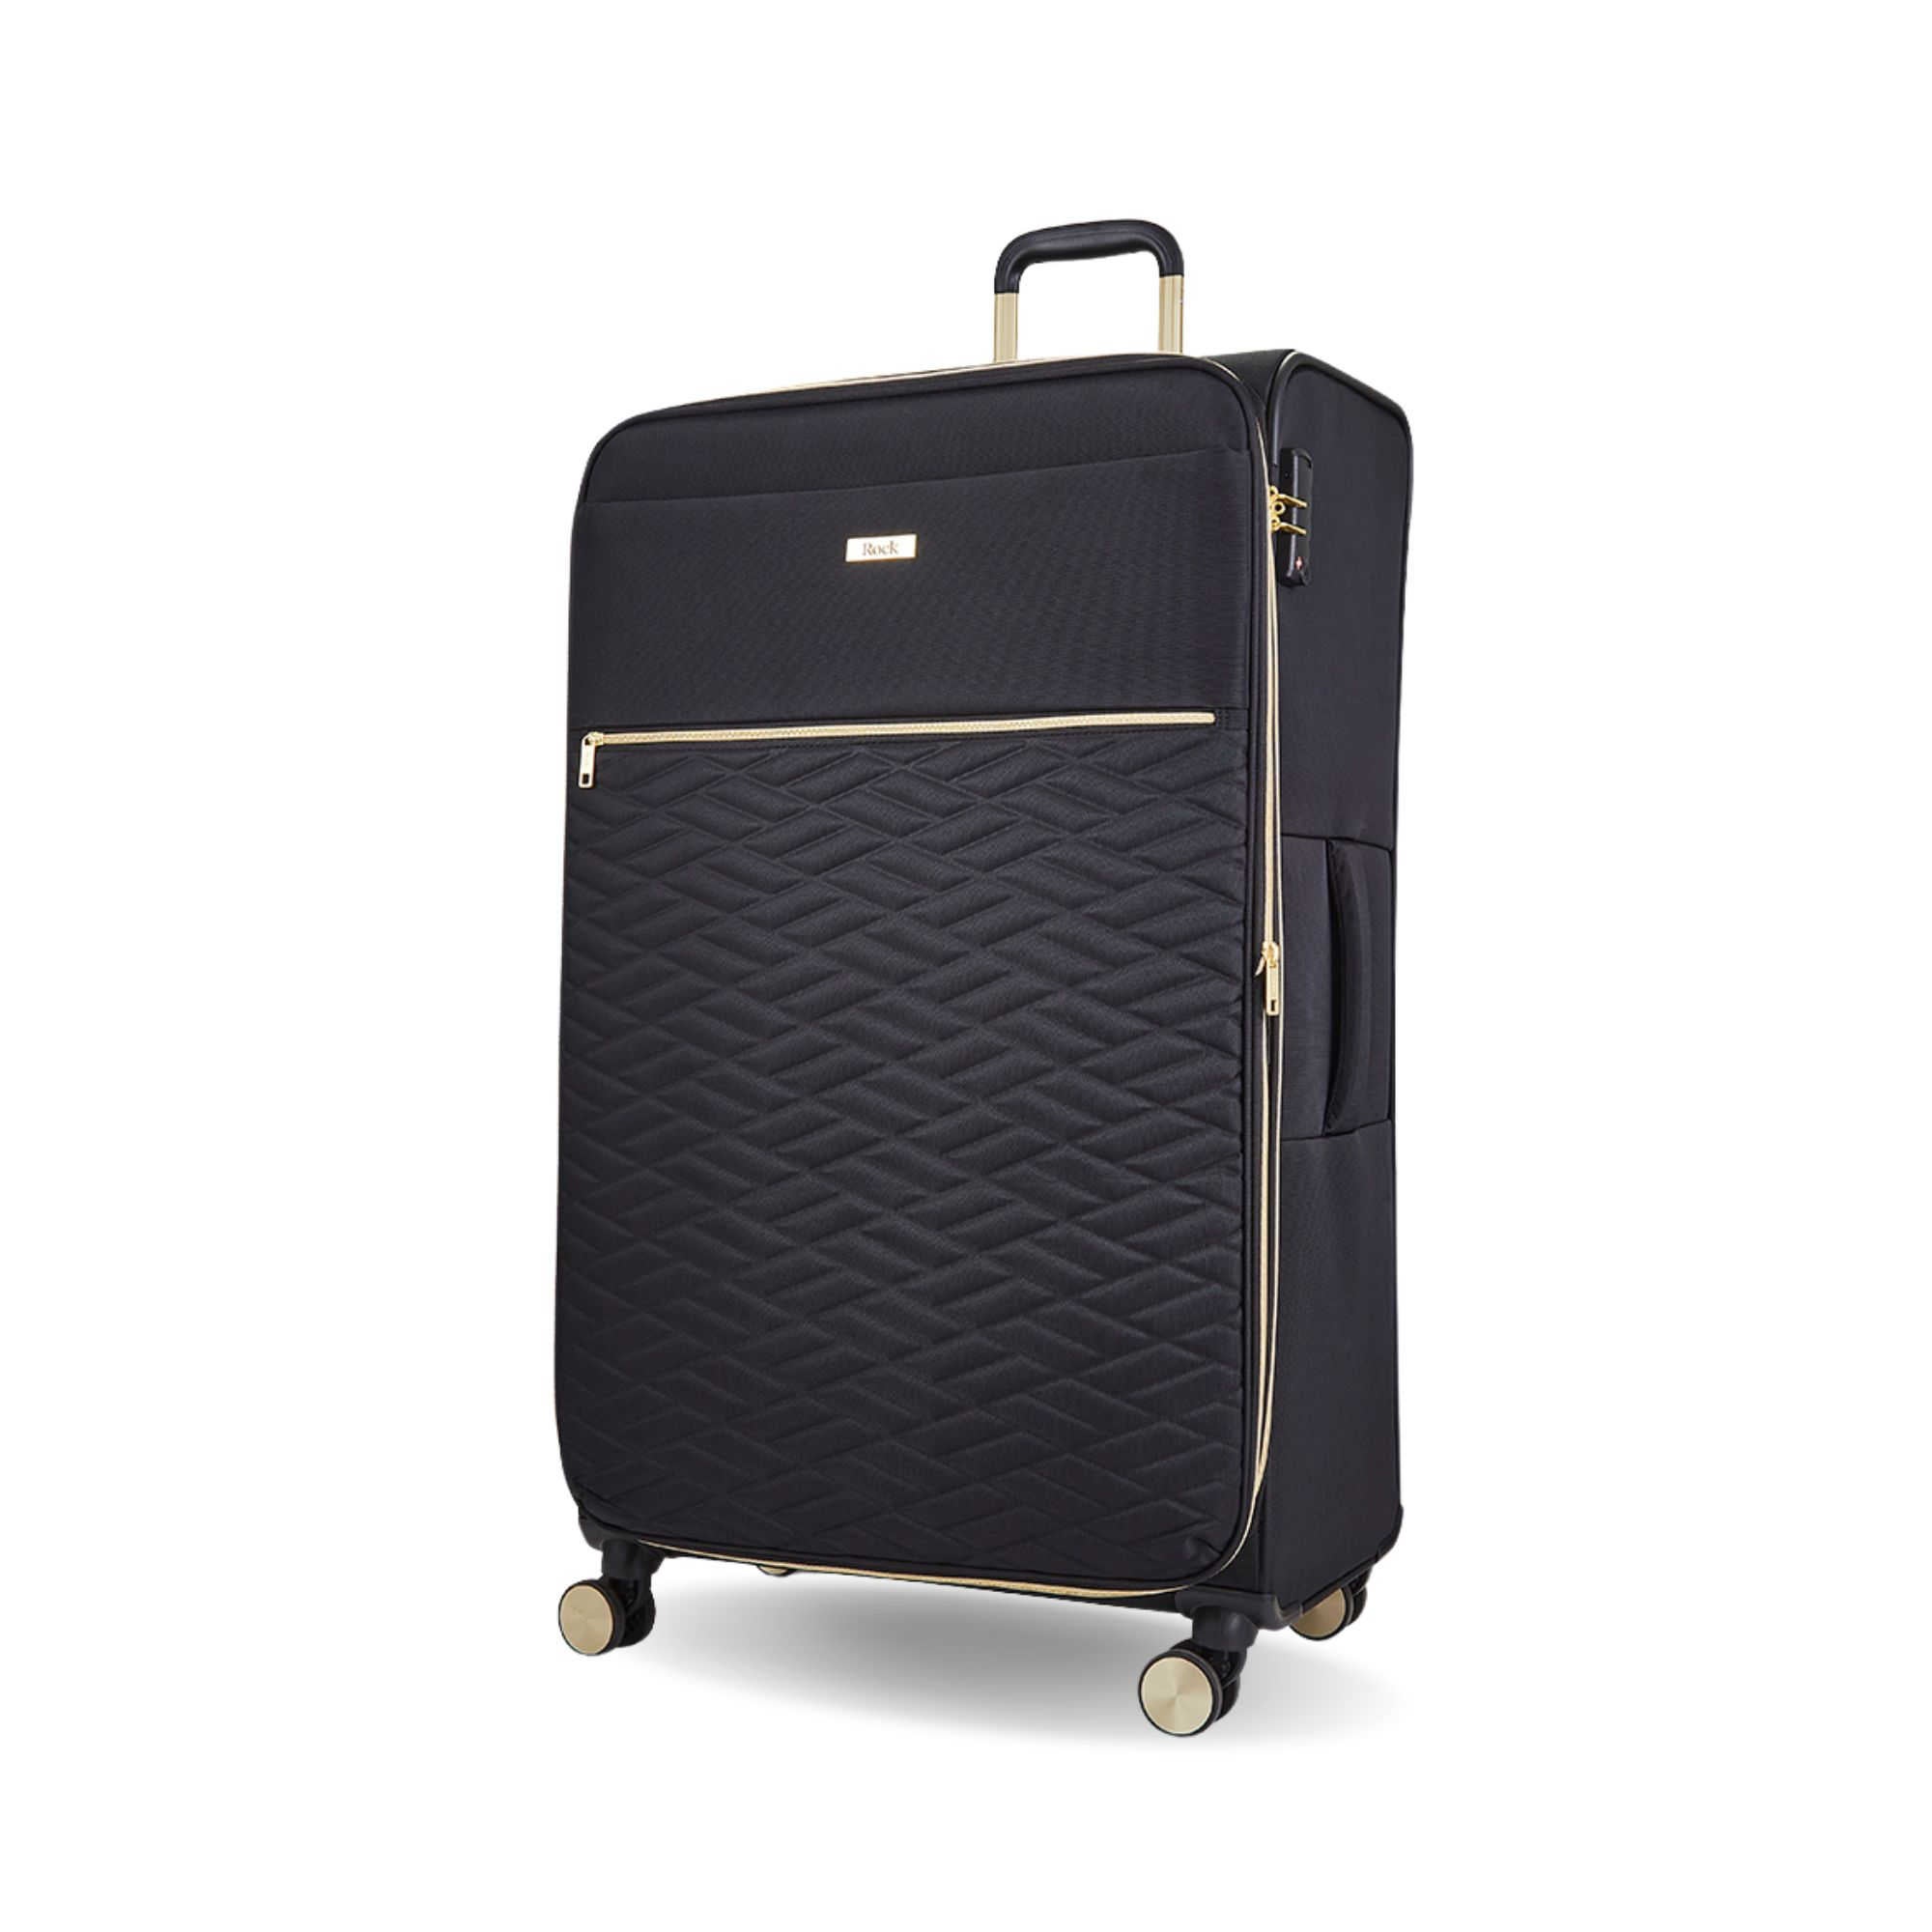 Rock Luggage Sloane Suitcase